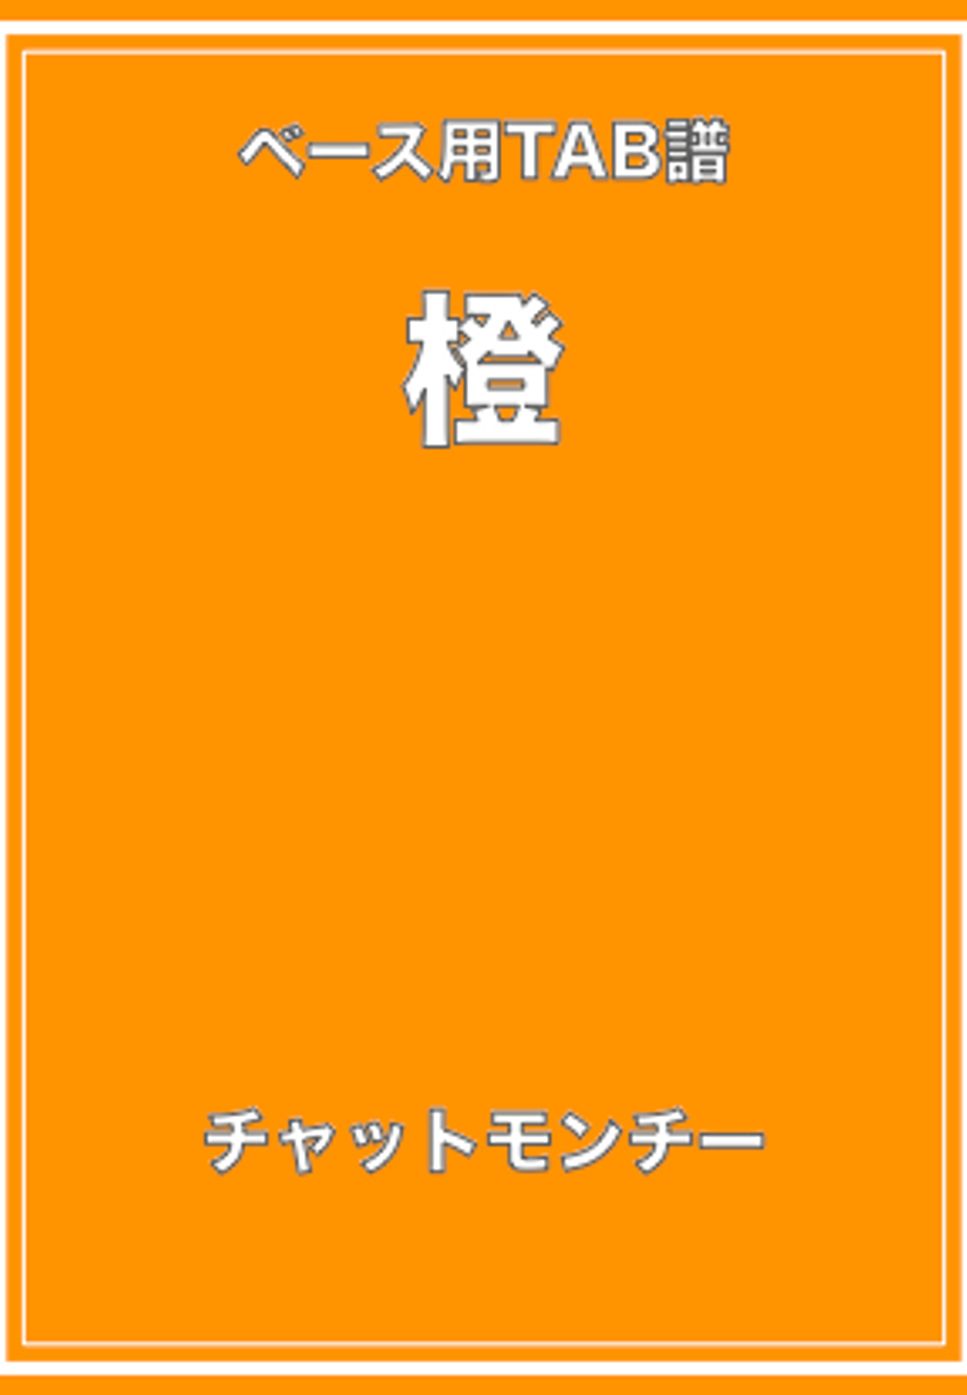 チャットモンチー - 橙 (ベースTAB譜) by ベースライン研究所タペ